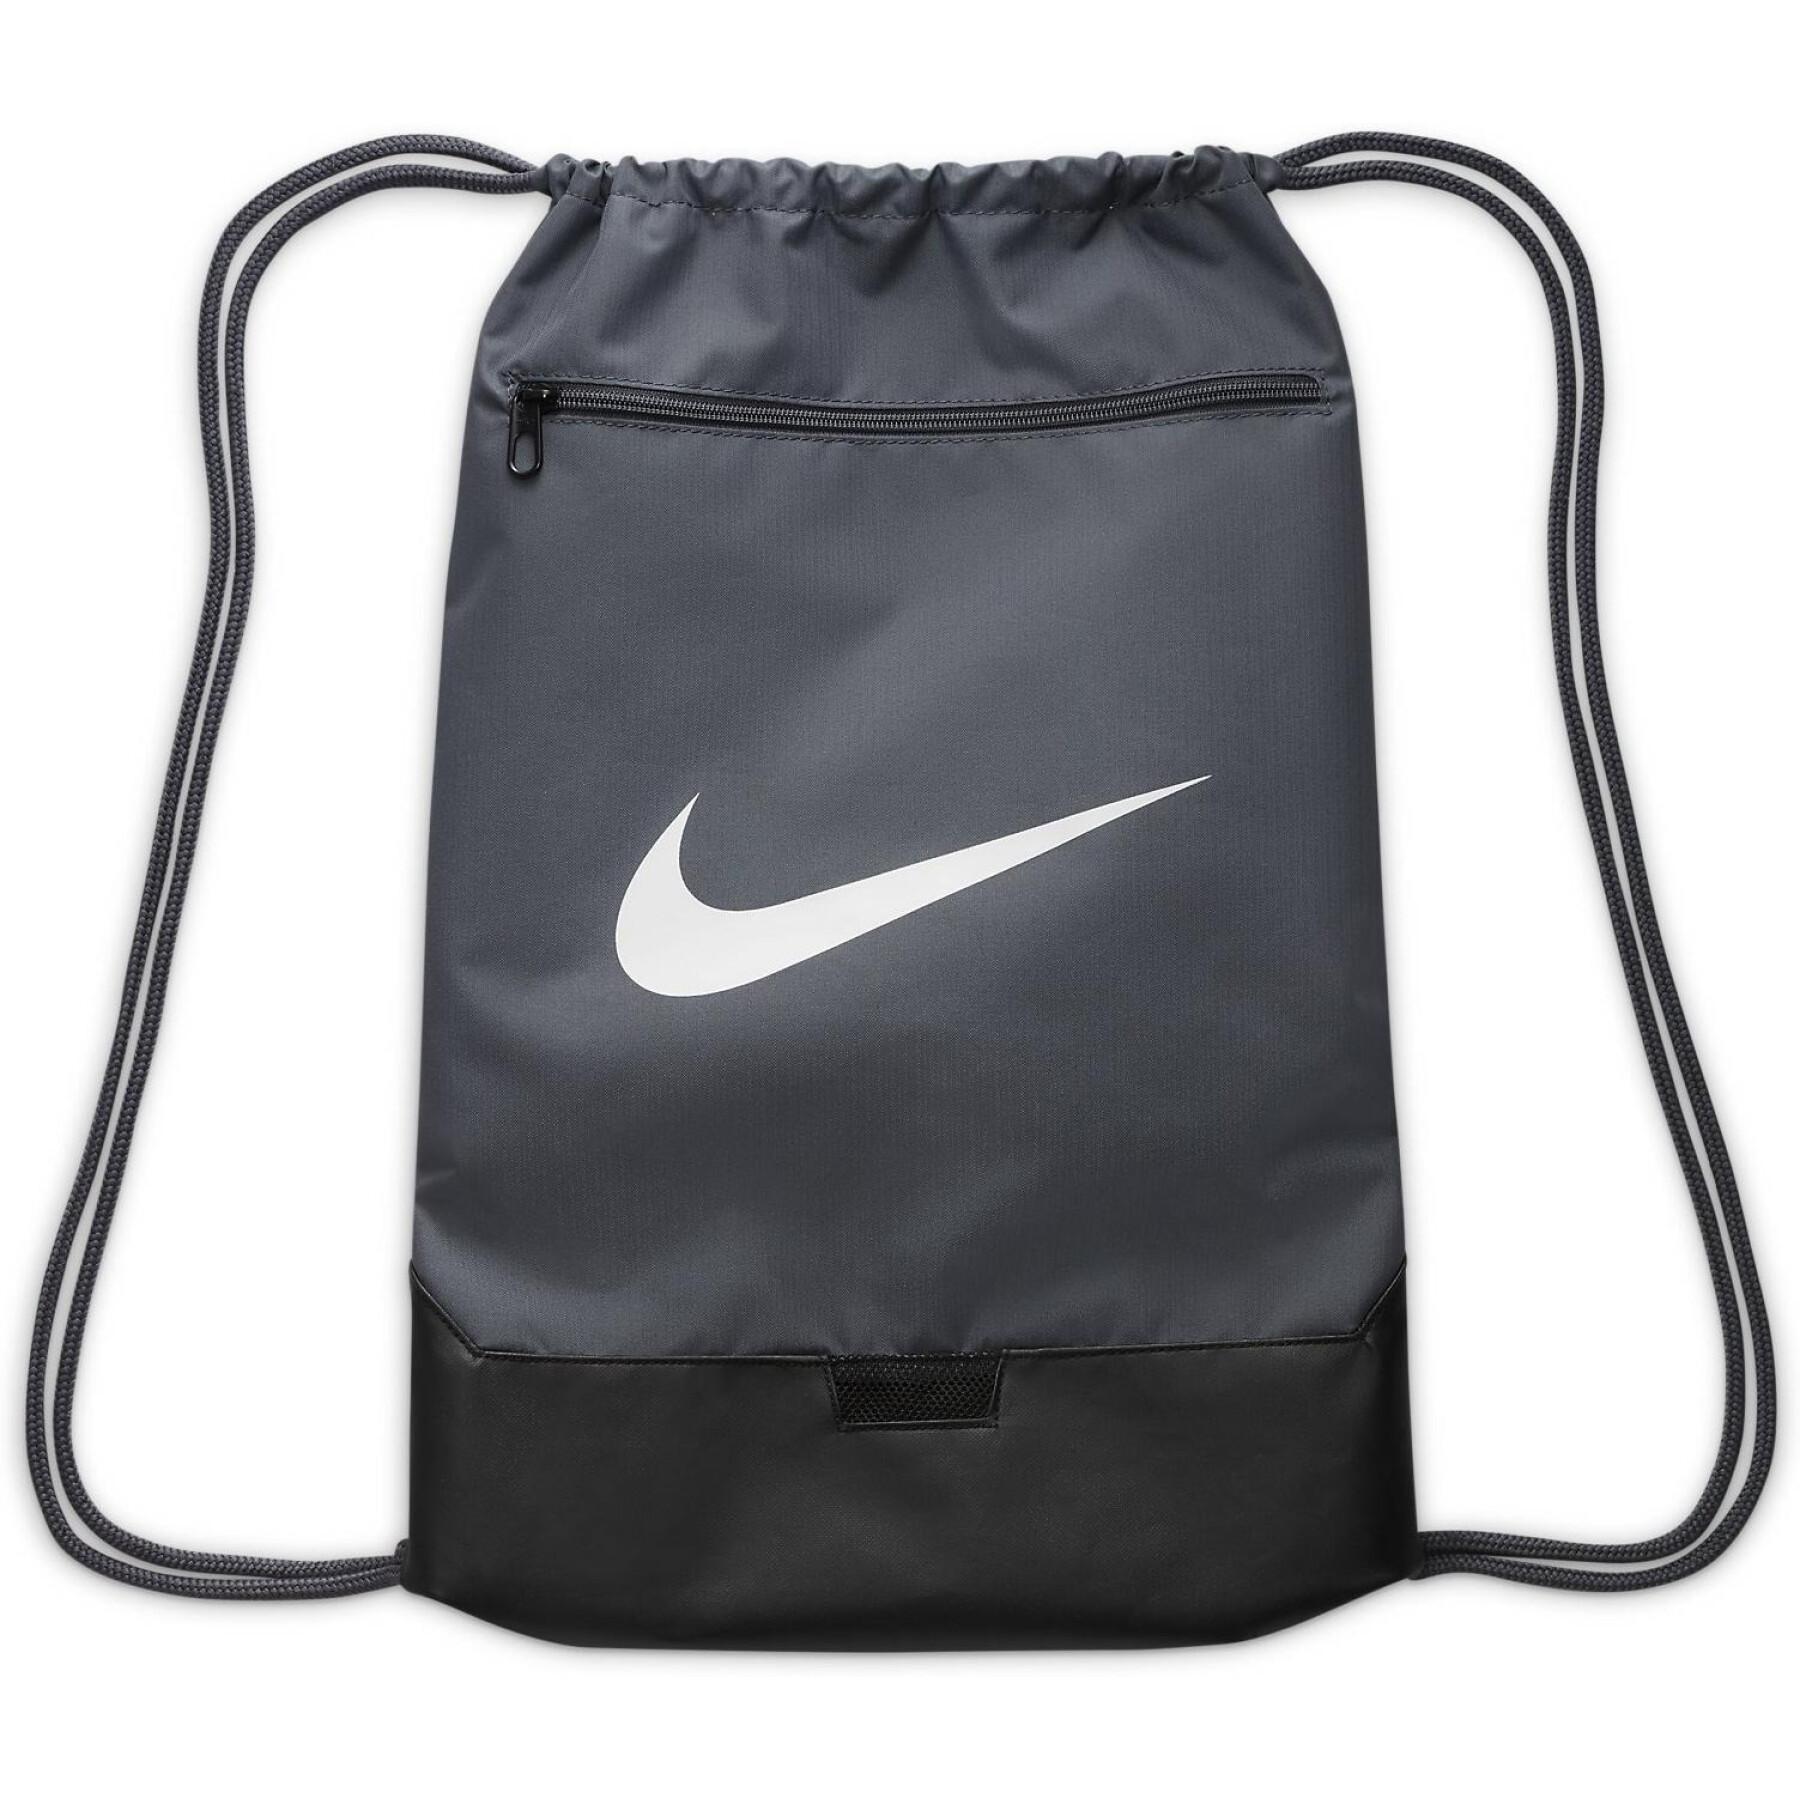 String bag Nike Brasilia 9.5